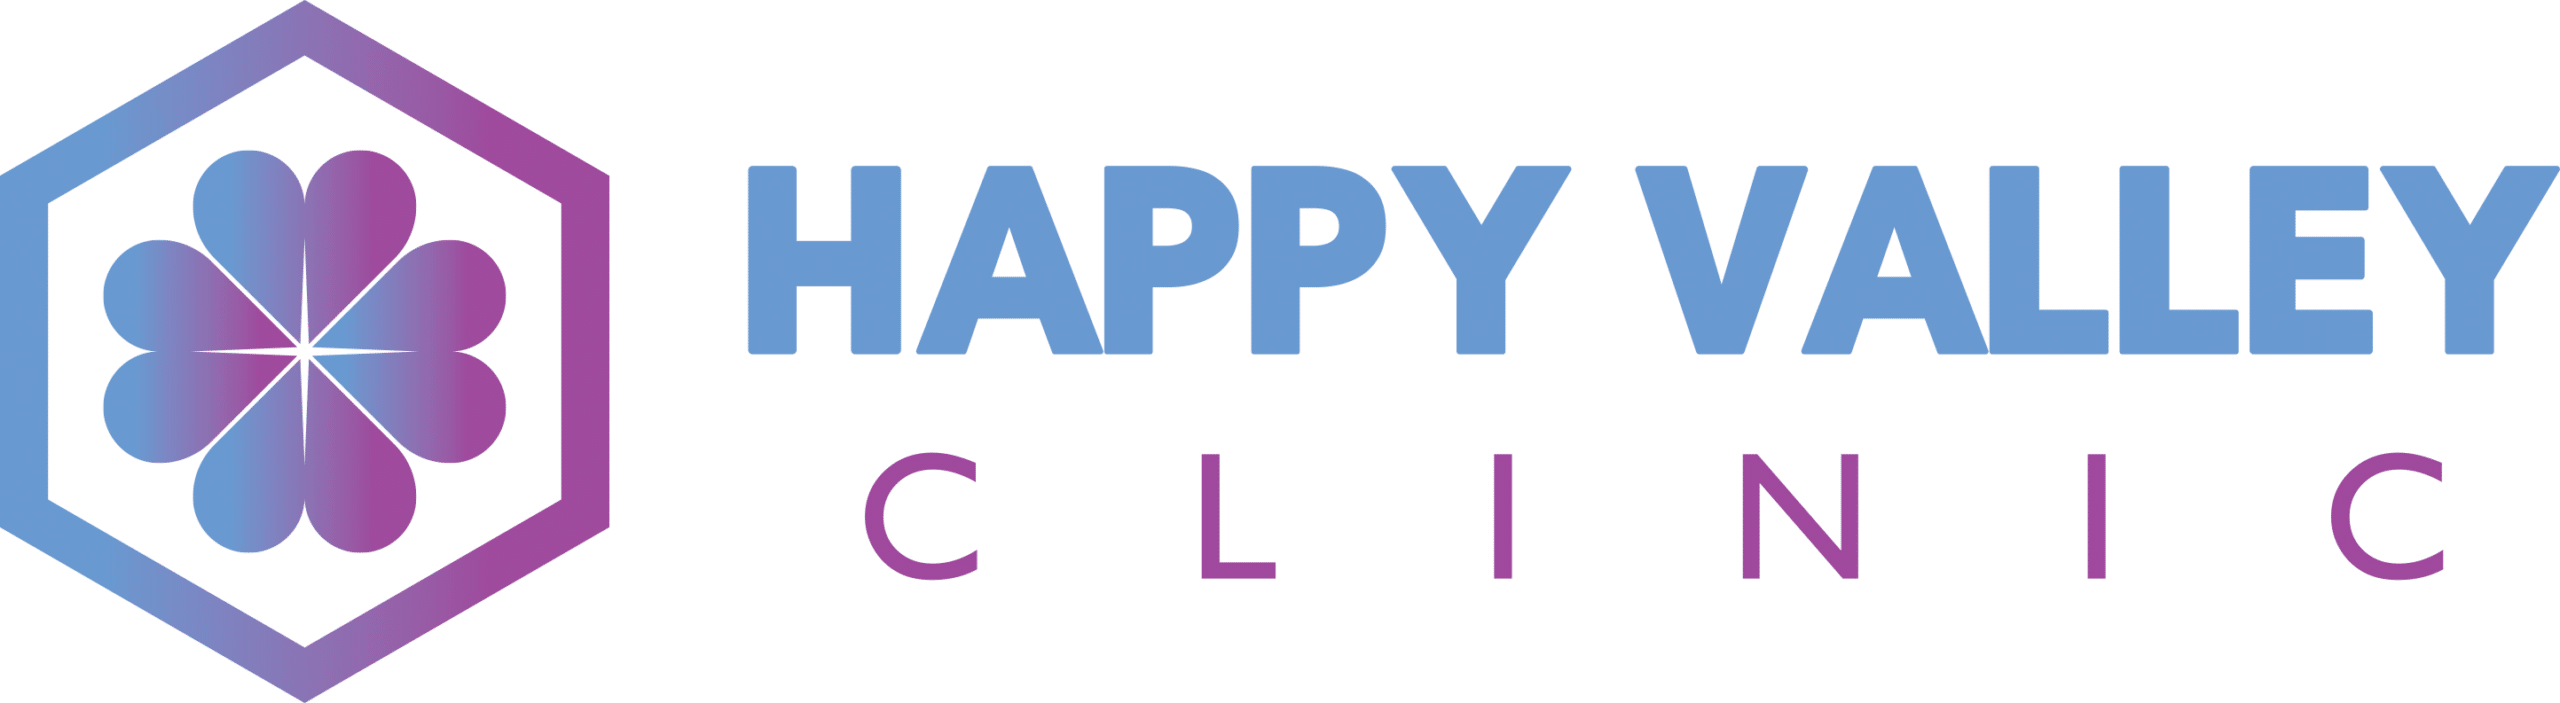 Happy Valley Clinic Logo